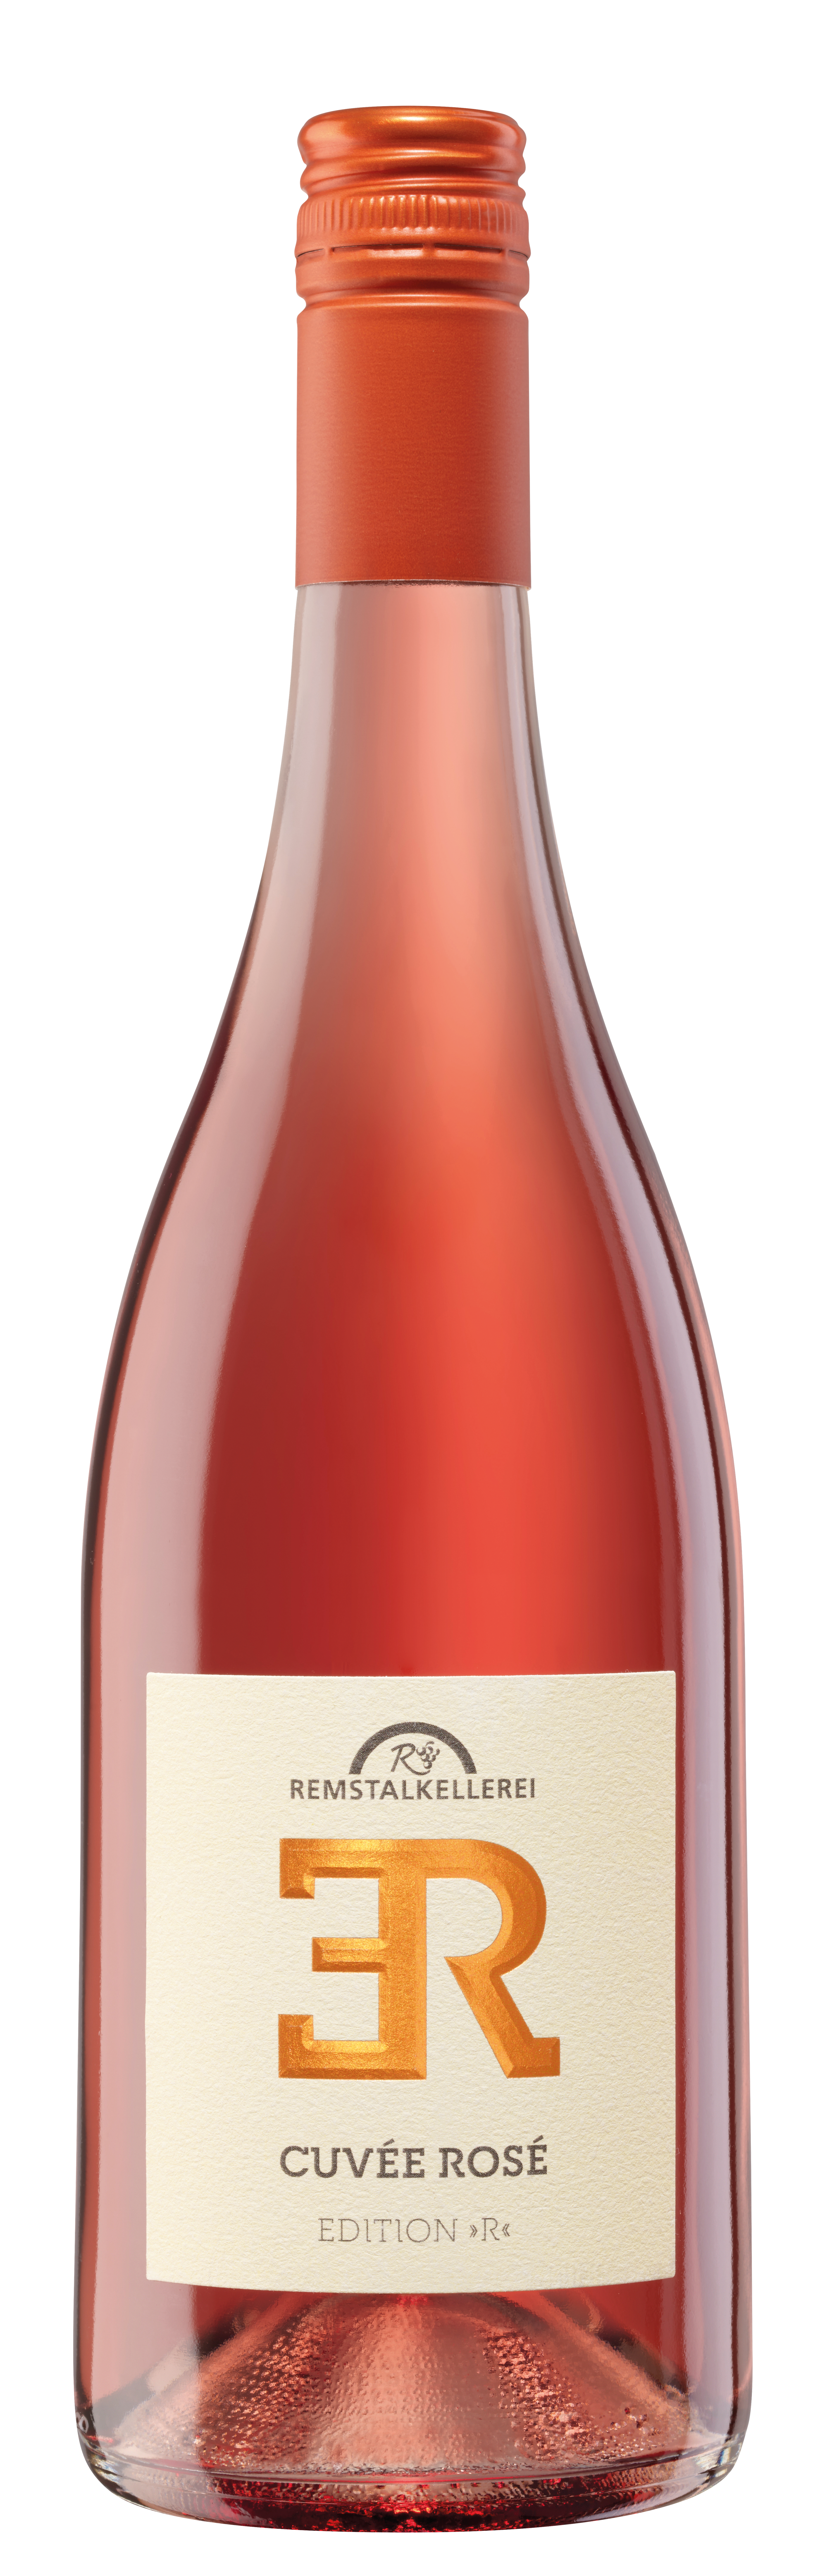 Cuvée Rosé Edition "R" trocken